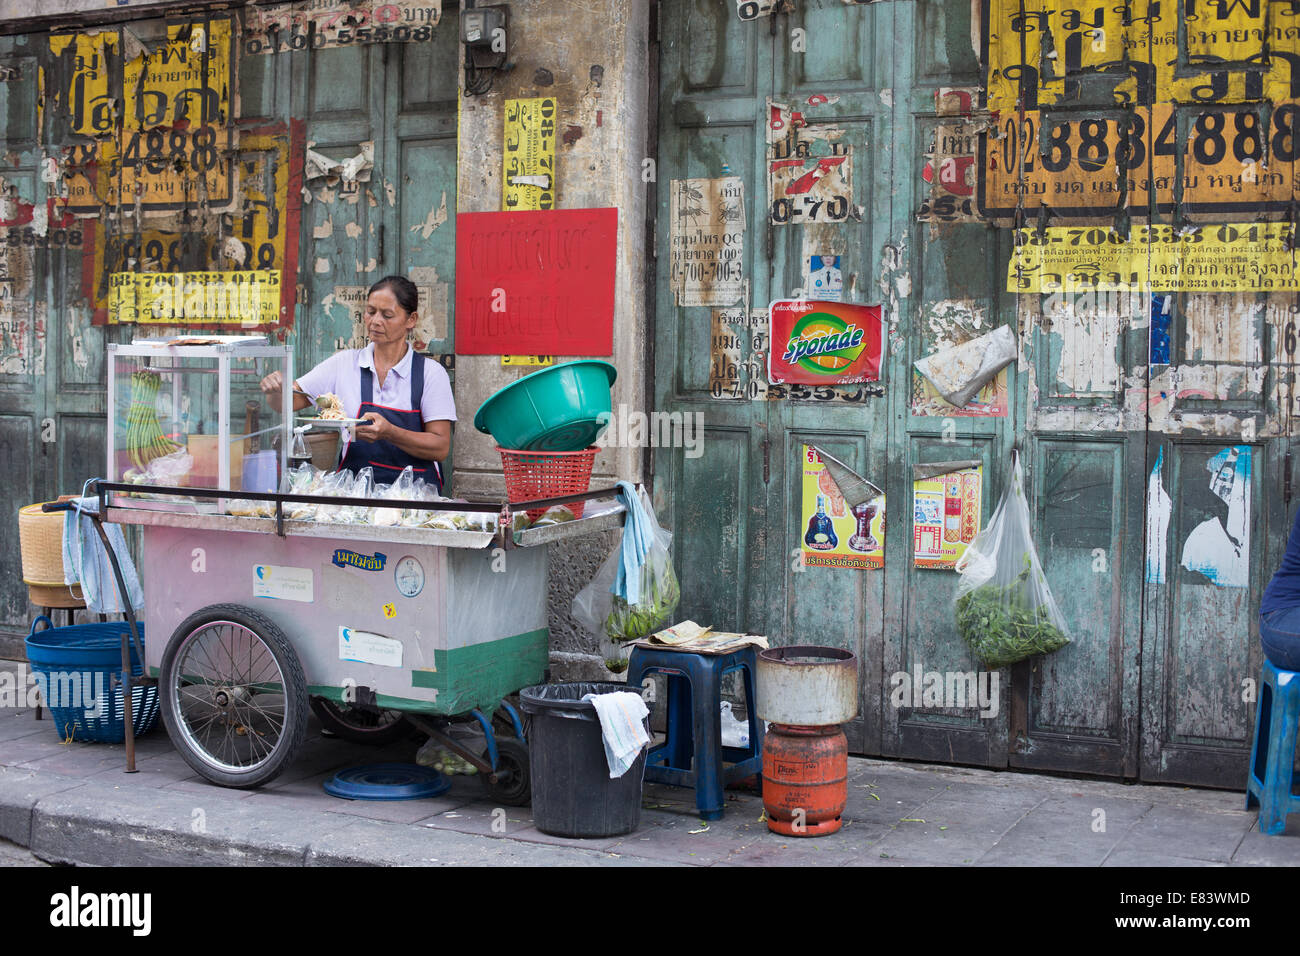 Food femelle porteur de préparer des aliments contre un mur vert, Chinatown, Bangkok, Thaïlande. Banque D'Images